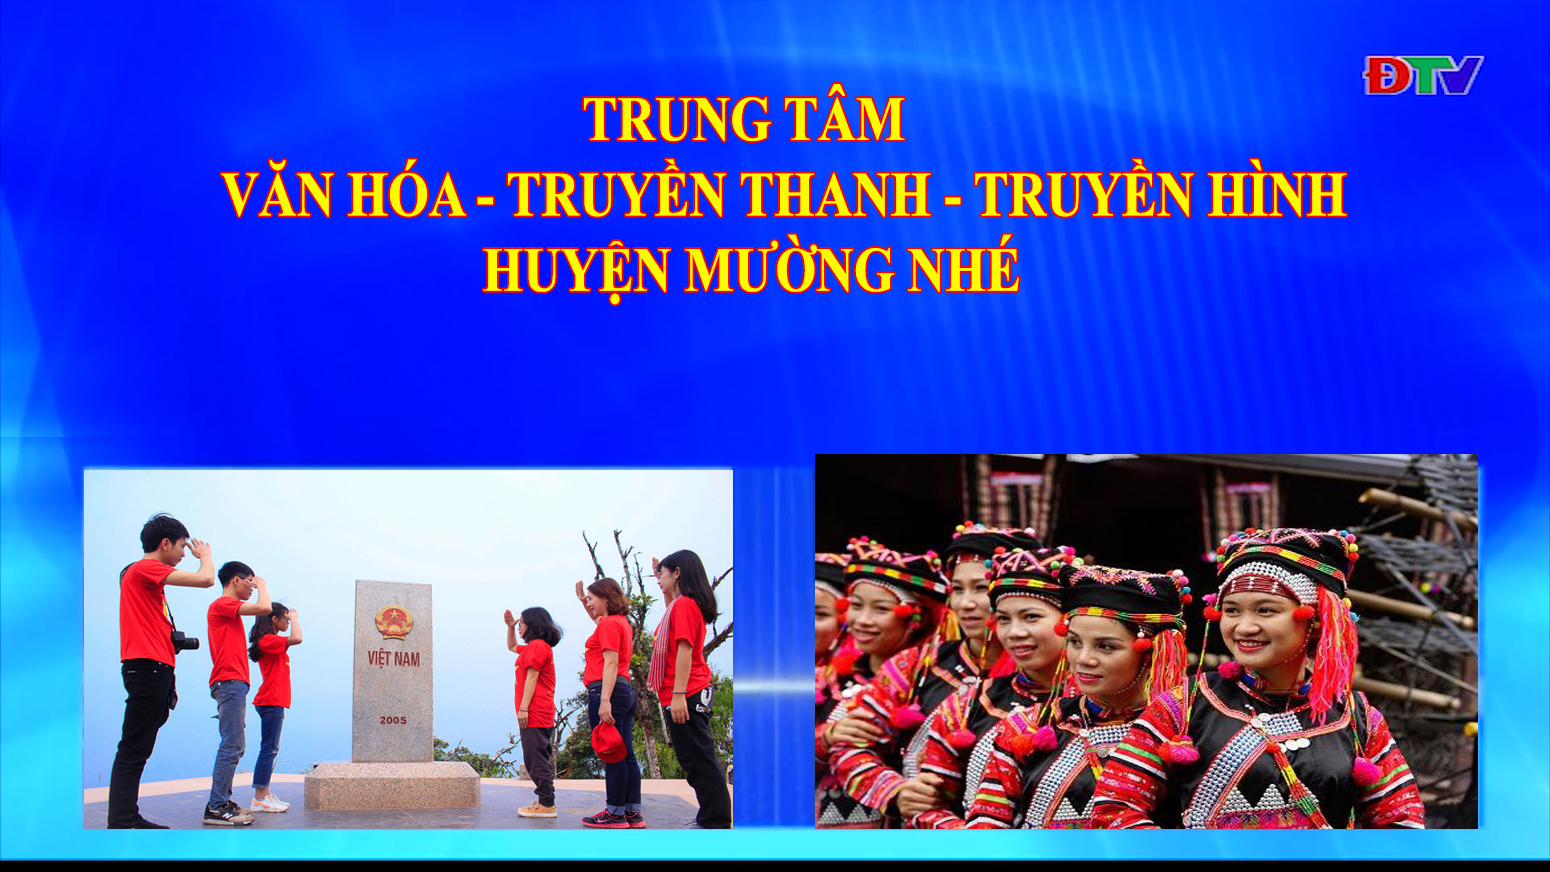 Trung tâm Văn hóa Truyền thanh Truyền hình huyện Mường Nhé (Ngày 18-6-2020)